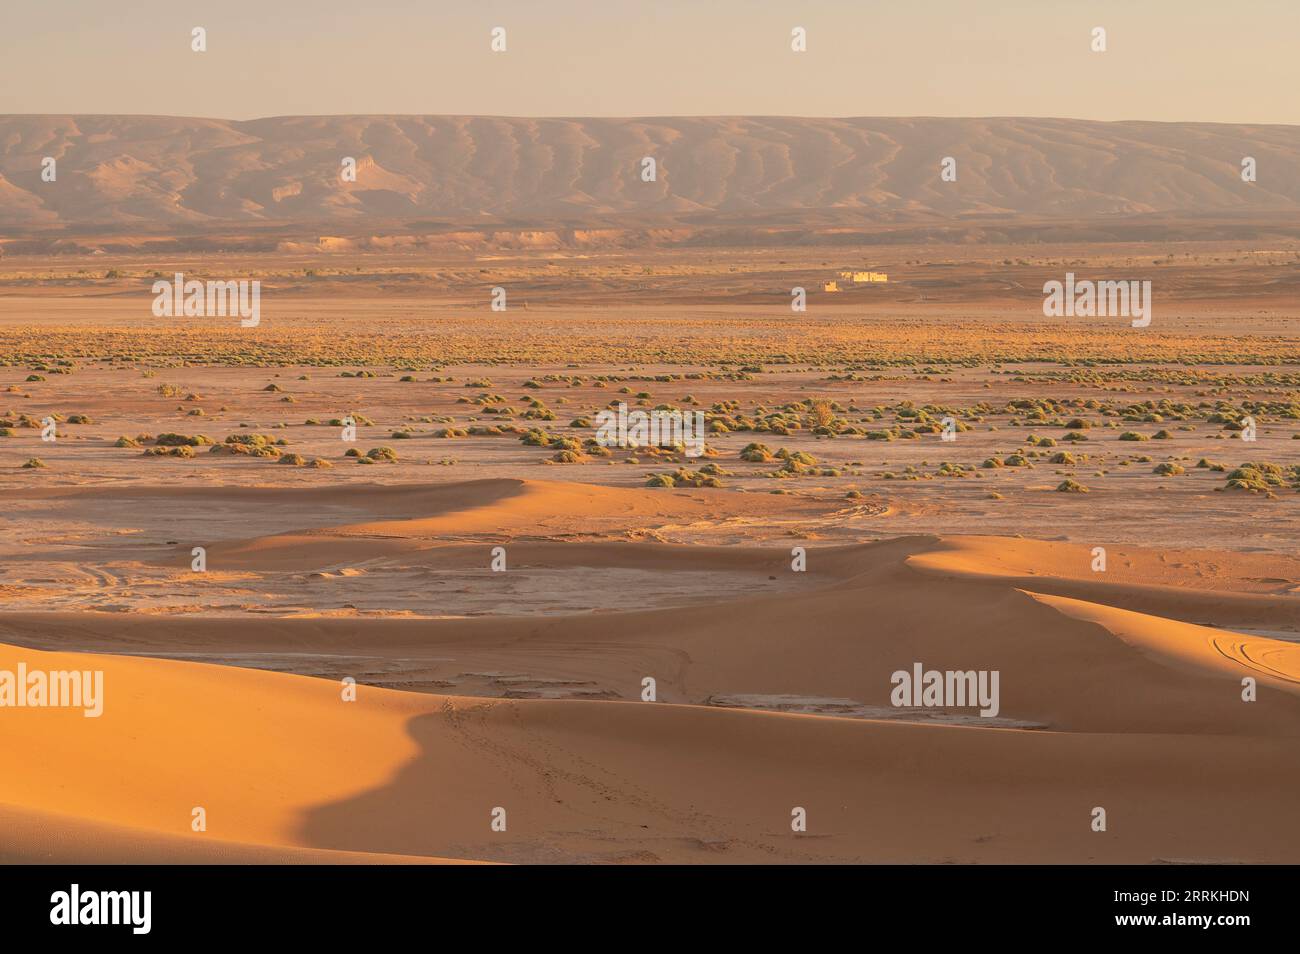 Reportage di viaggio immagini e fotografie stock ad alta risoluzione - Alamy